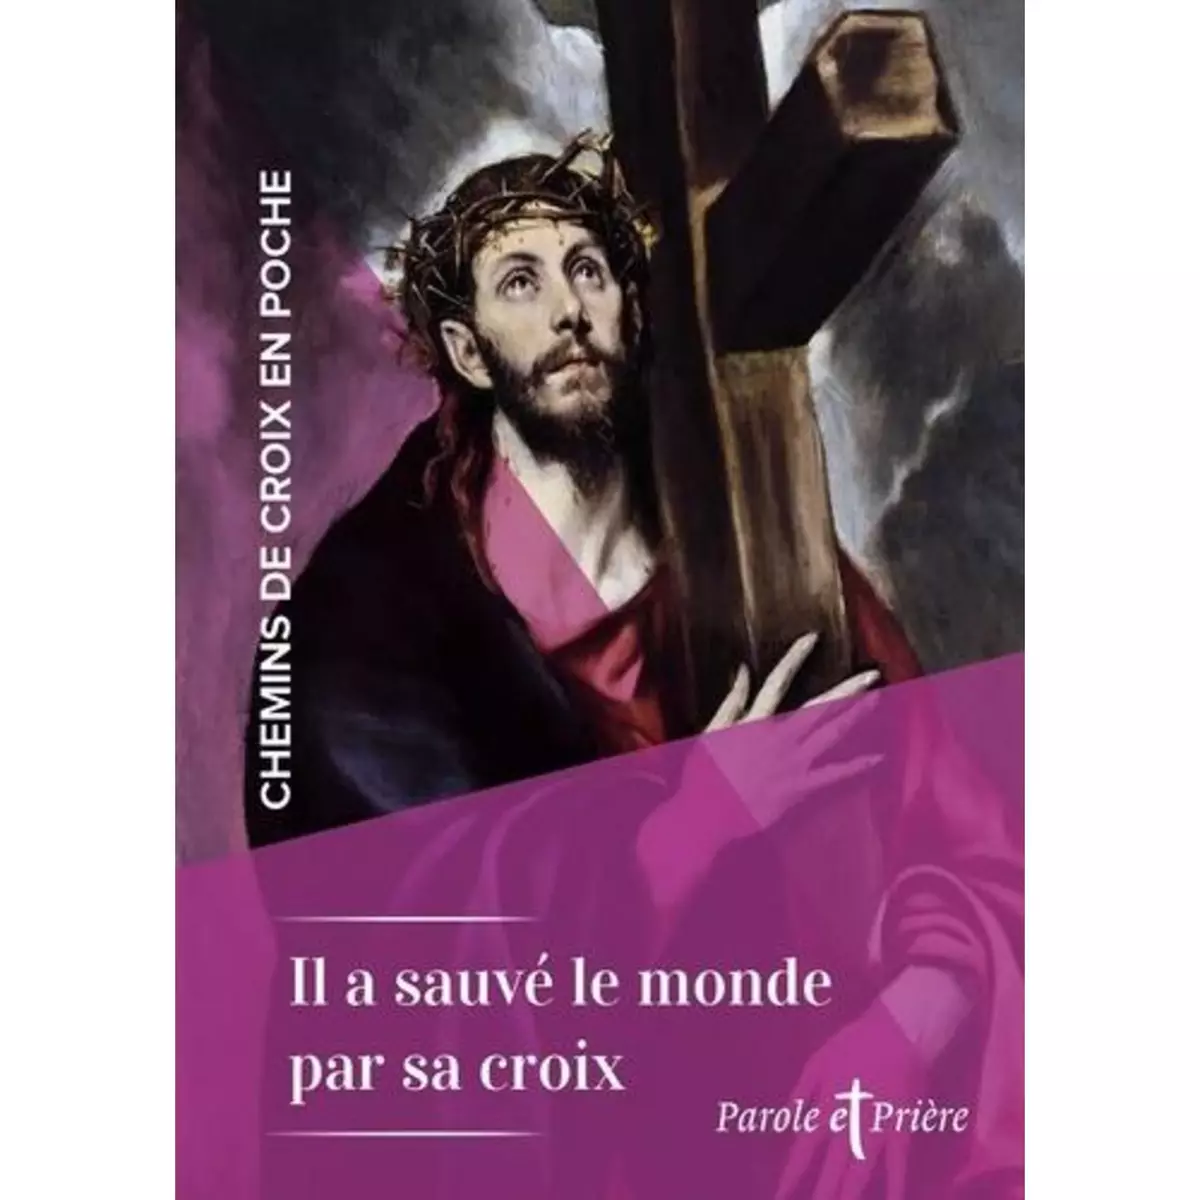  IL A SAUVE LE MONDE PAR SA CROIX, Chanot Cédric